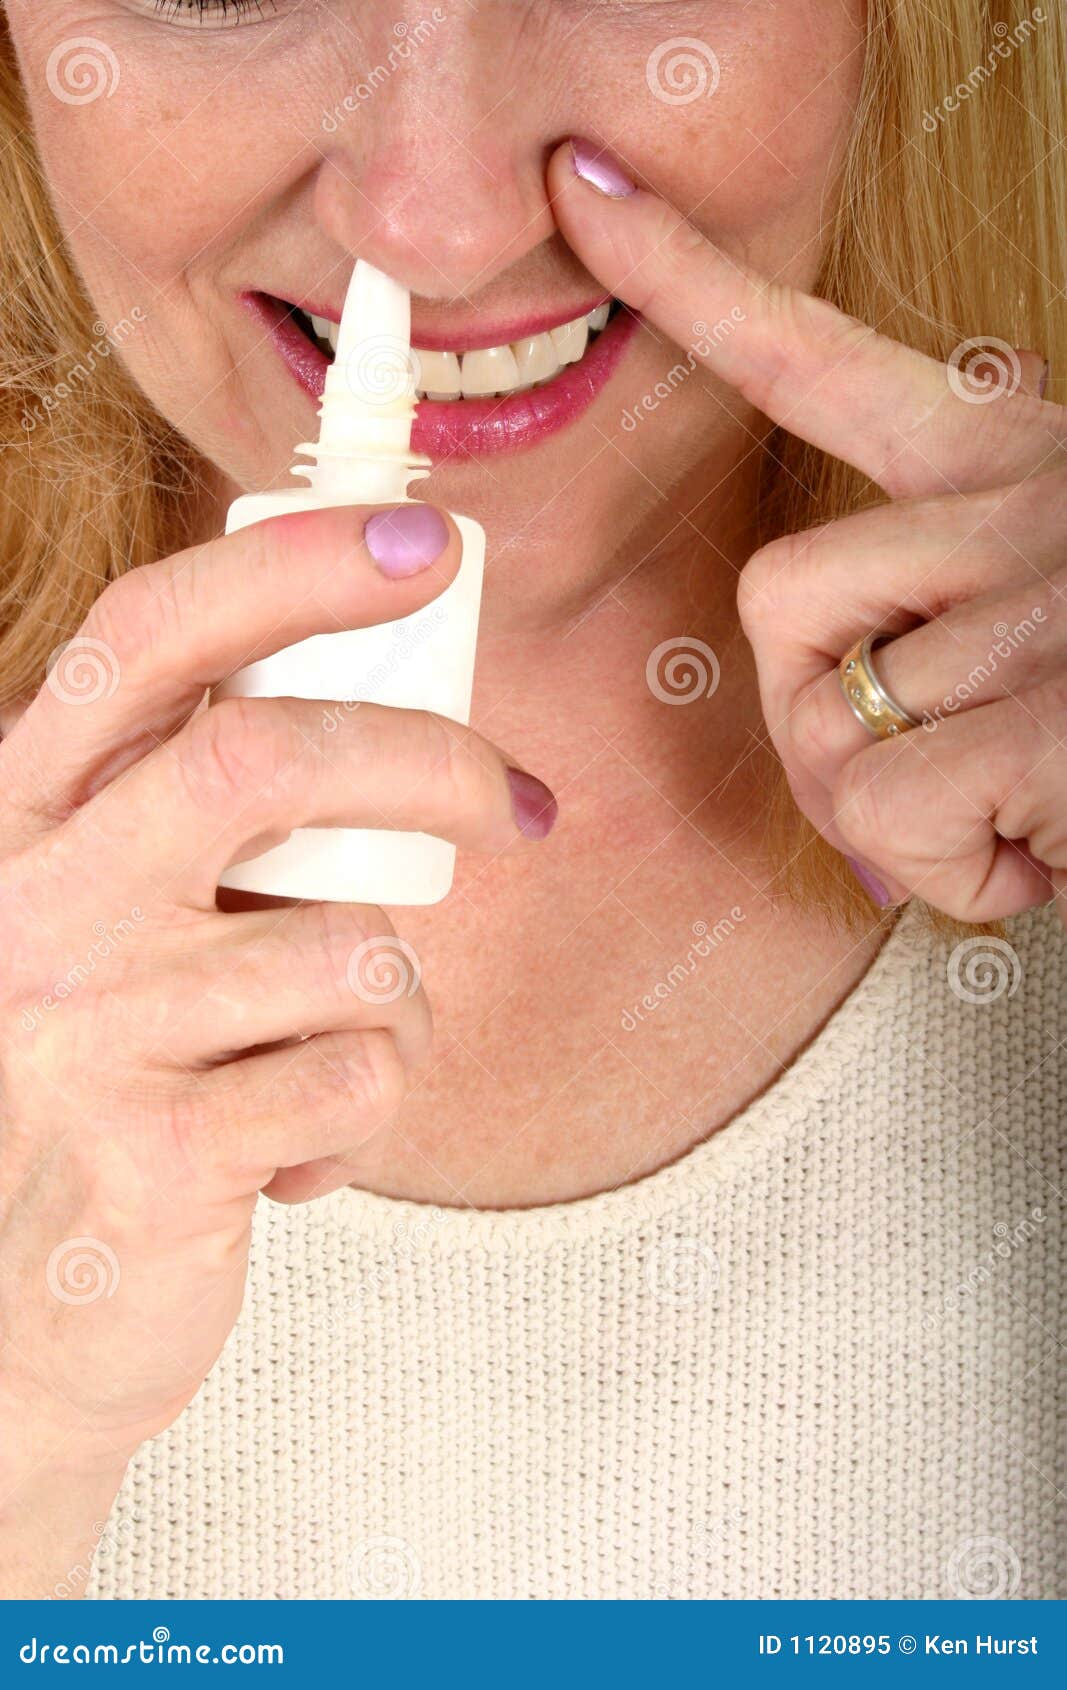 woman spraying nasal spray in nose 2